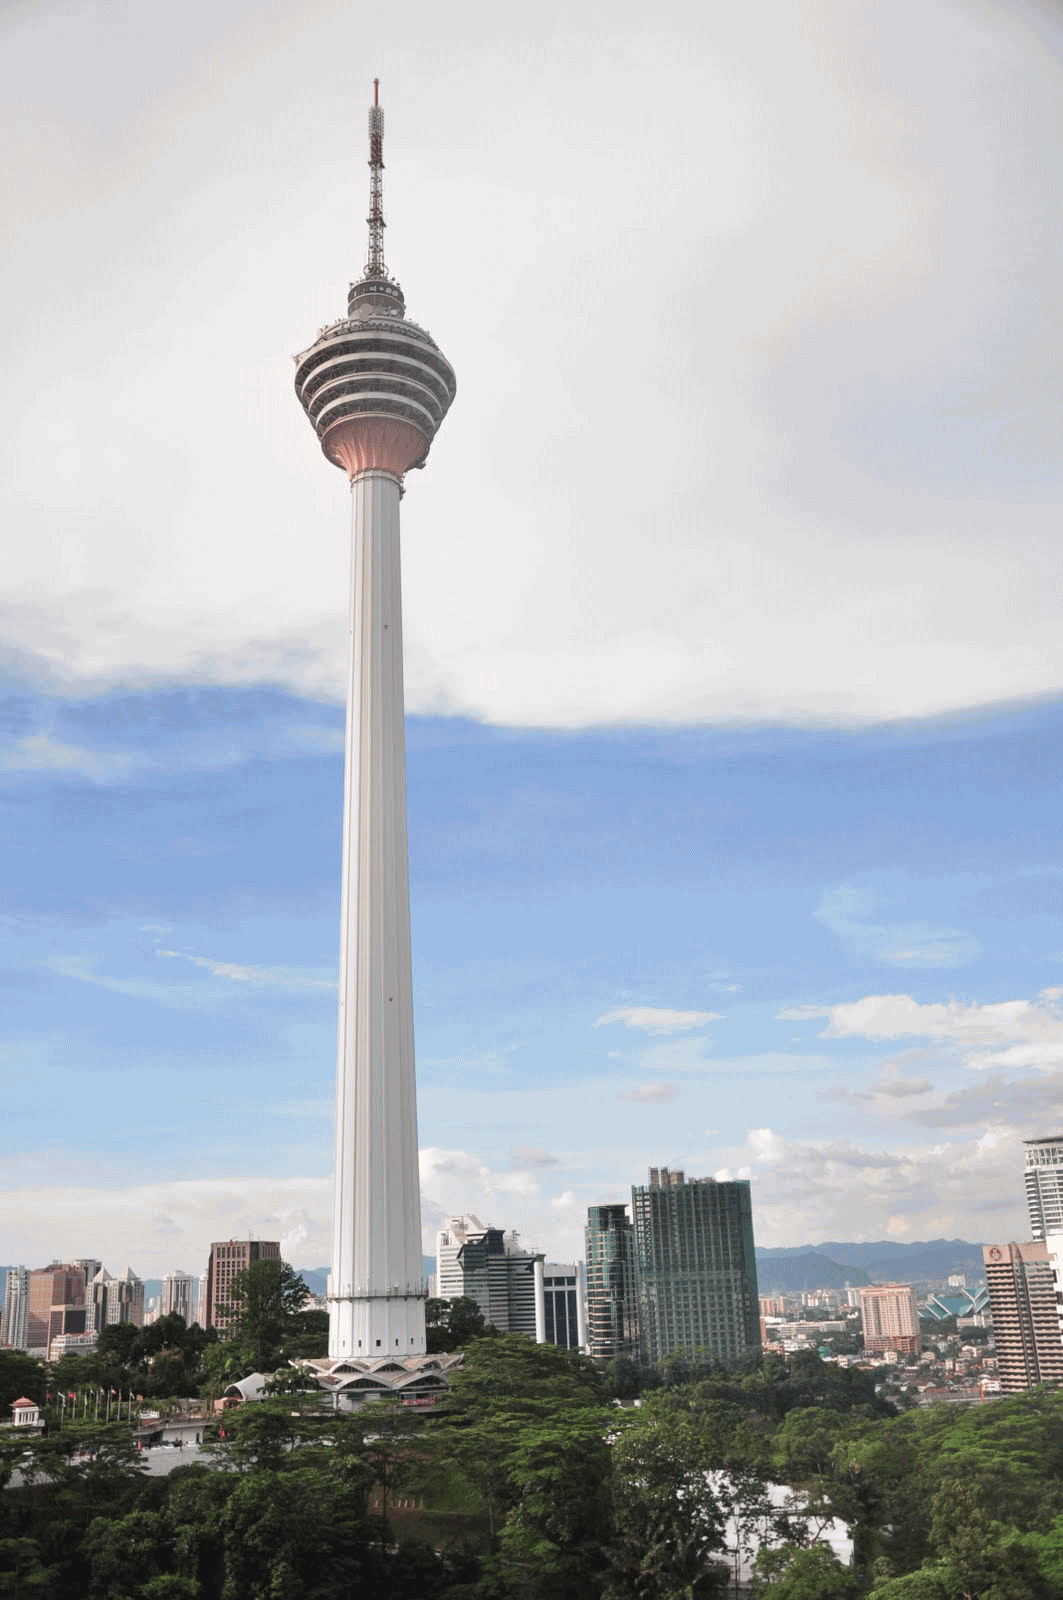 Beautiful Image Of Kuala Lumpur Tower